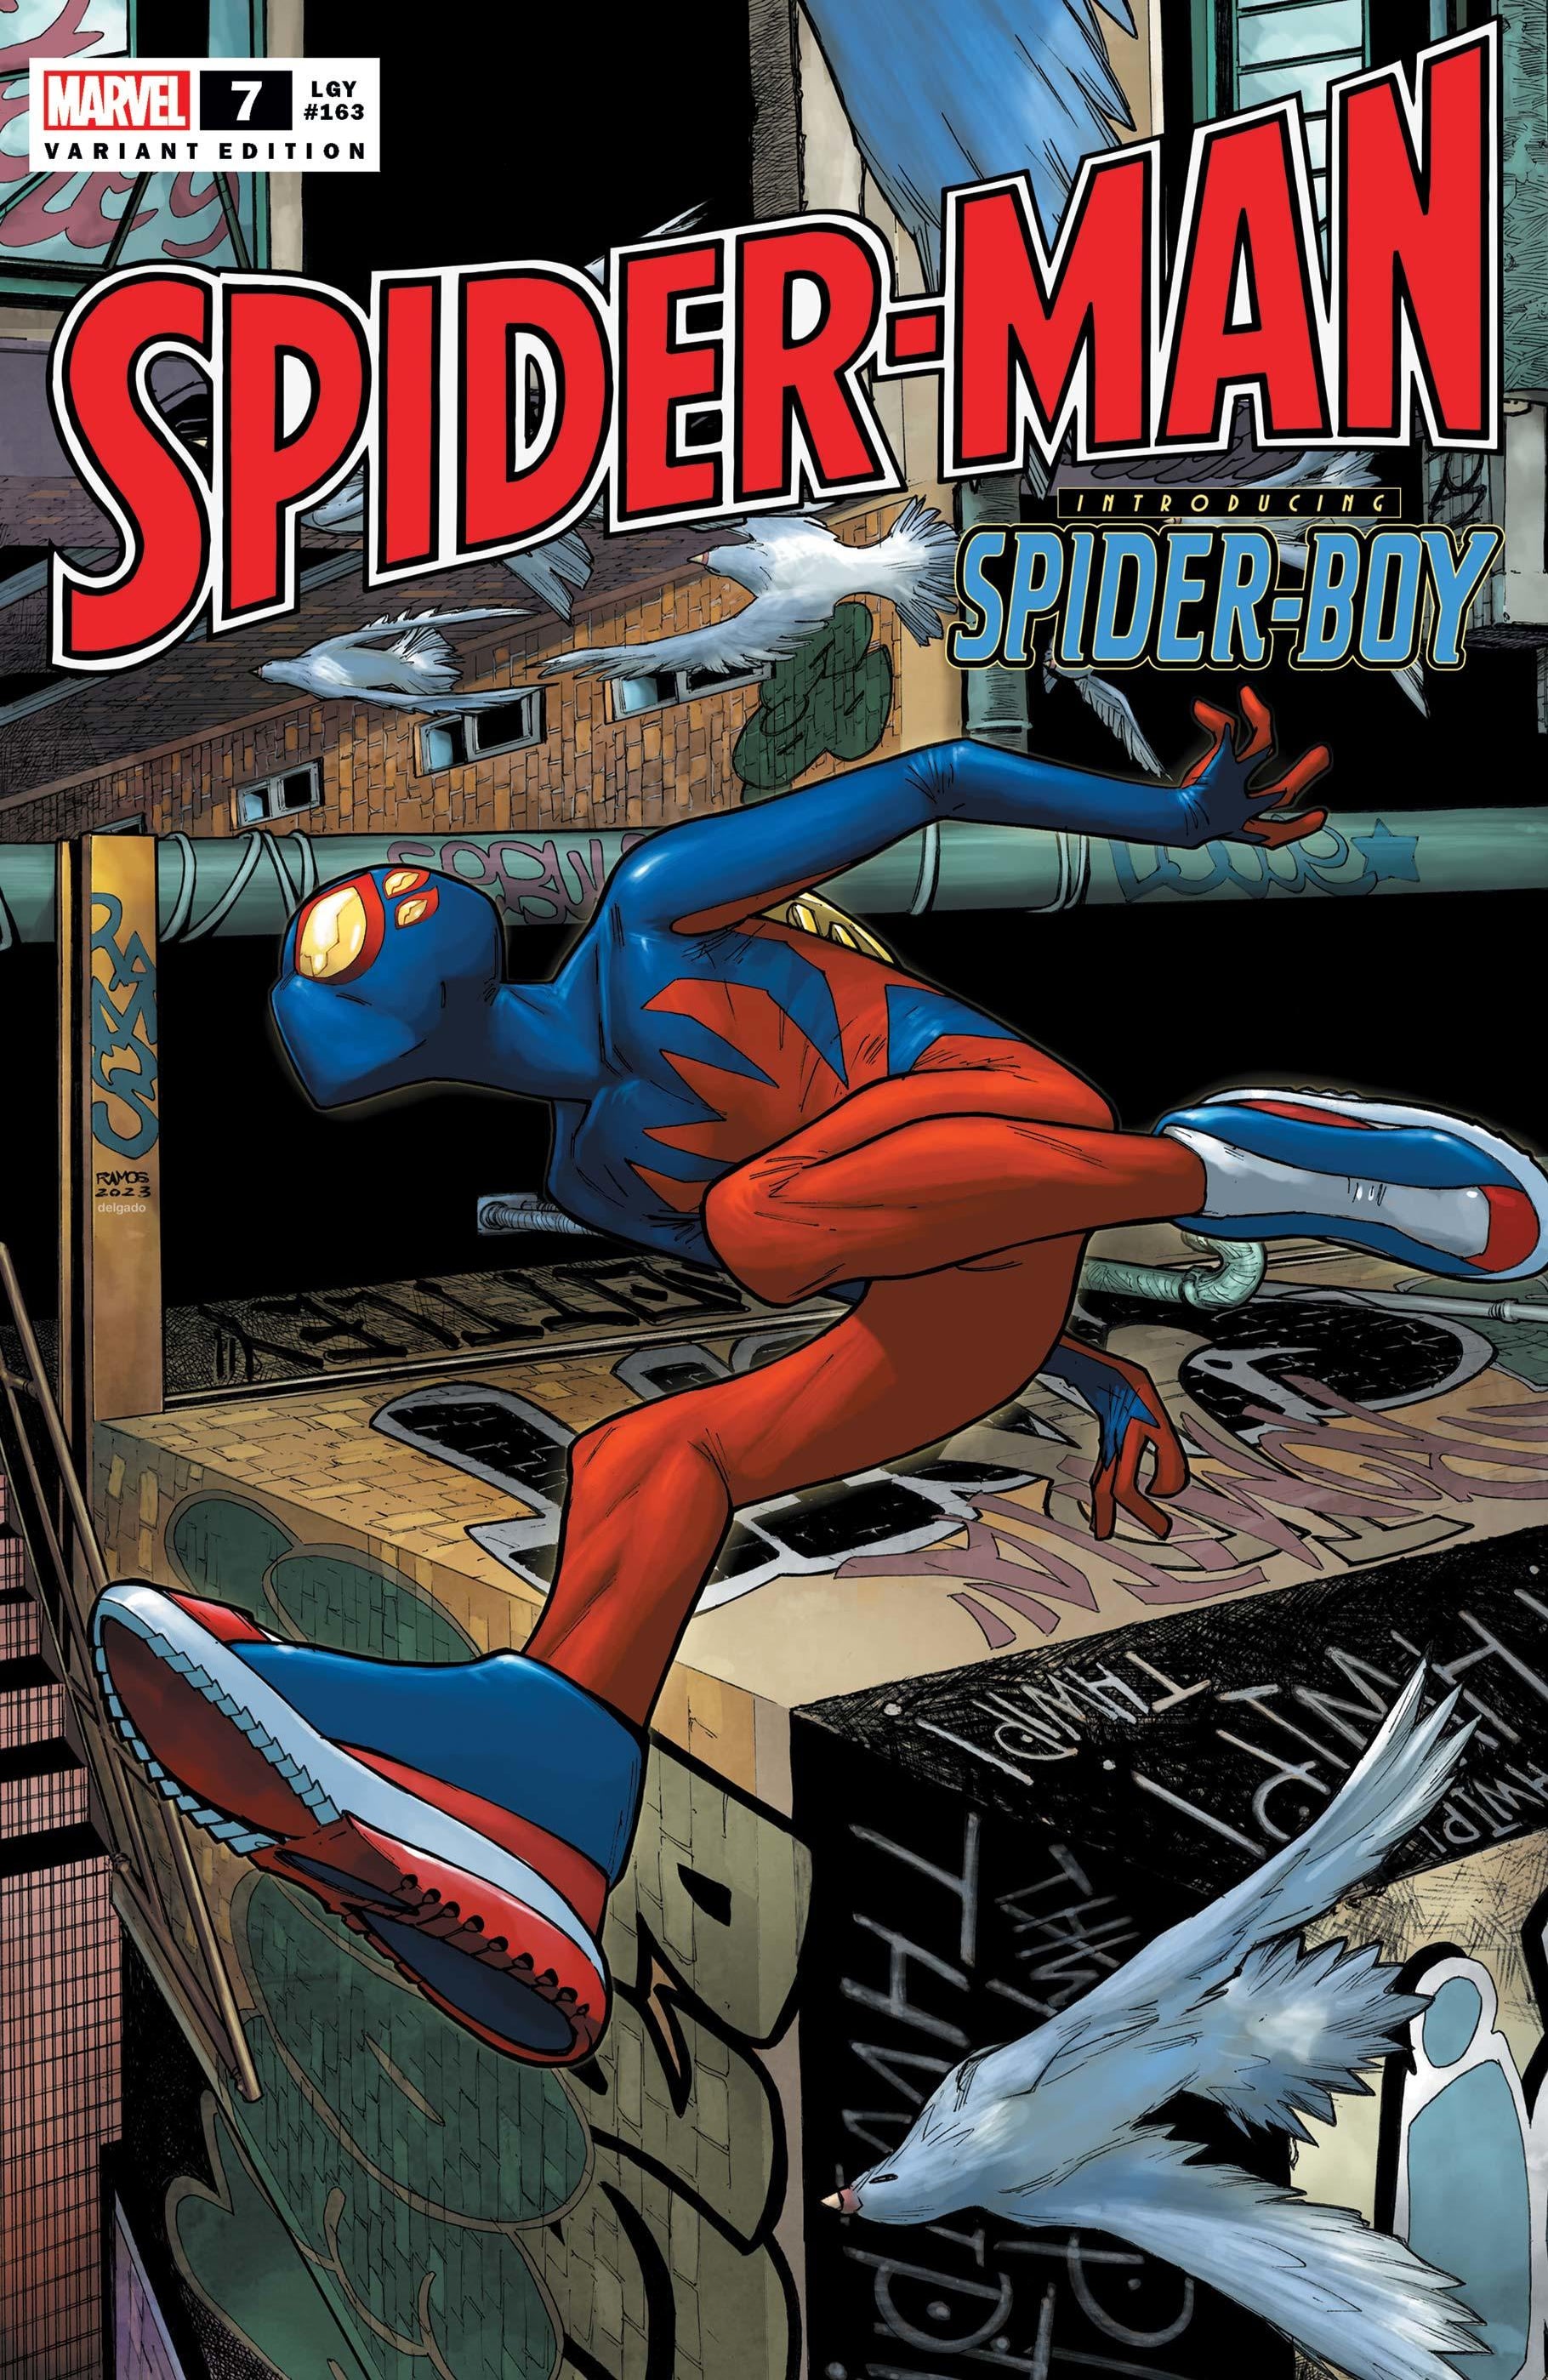 Meet Spider-Boy, Spider-Man’s New Sidekick